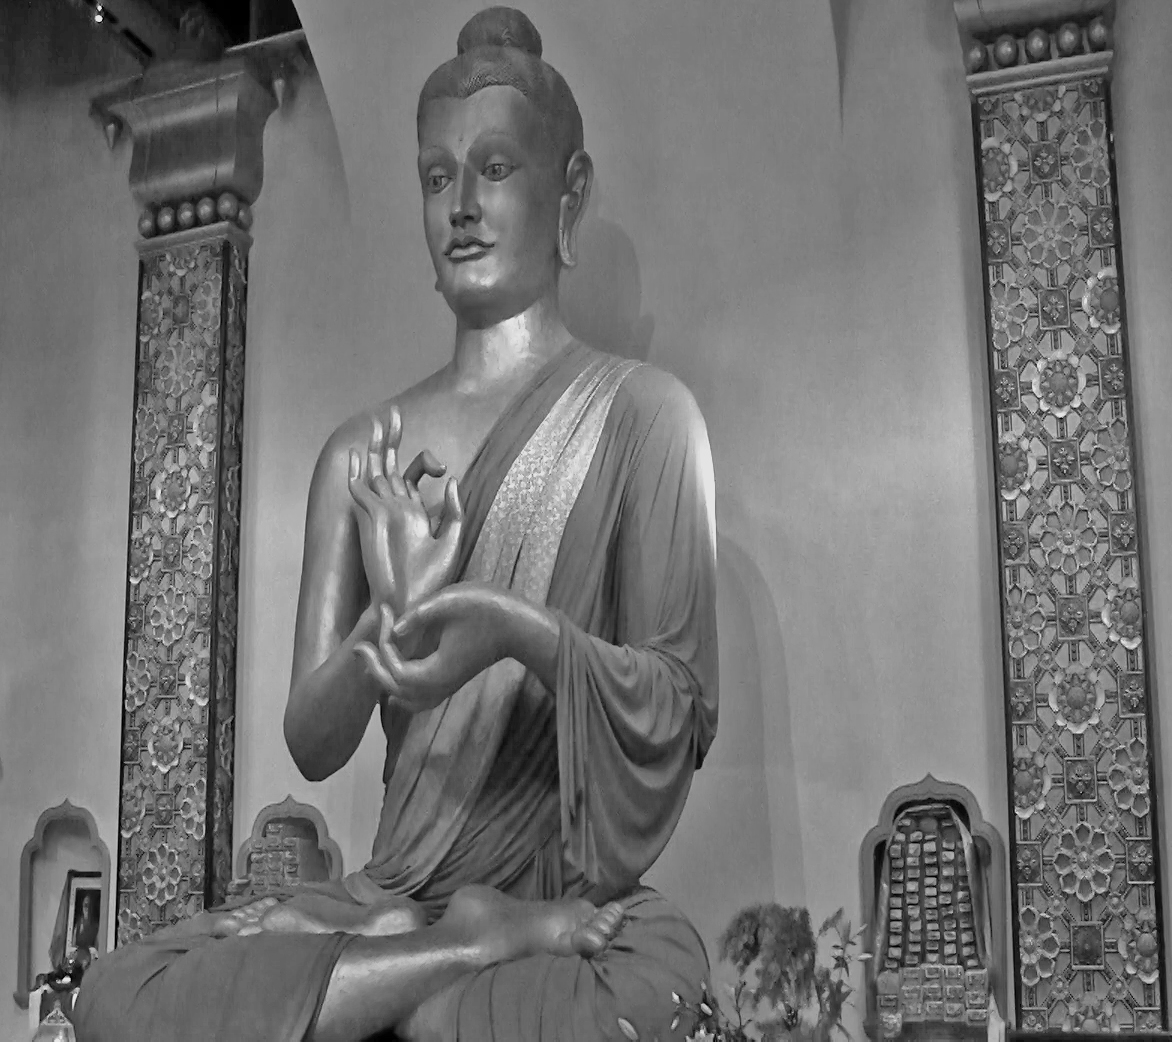 the Stupa's Buddha